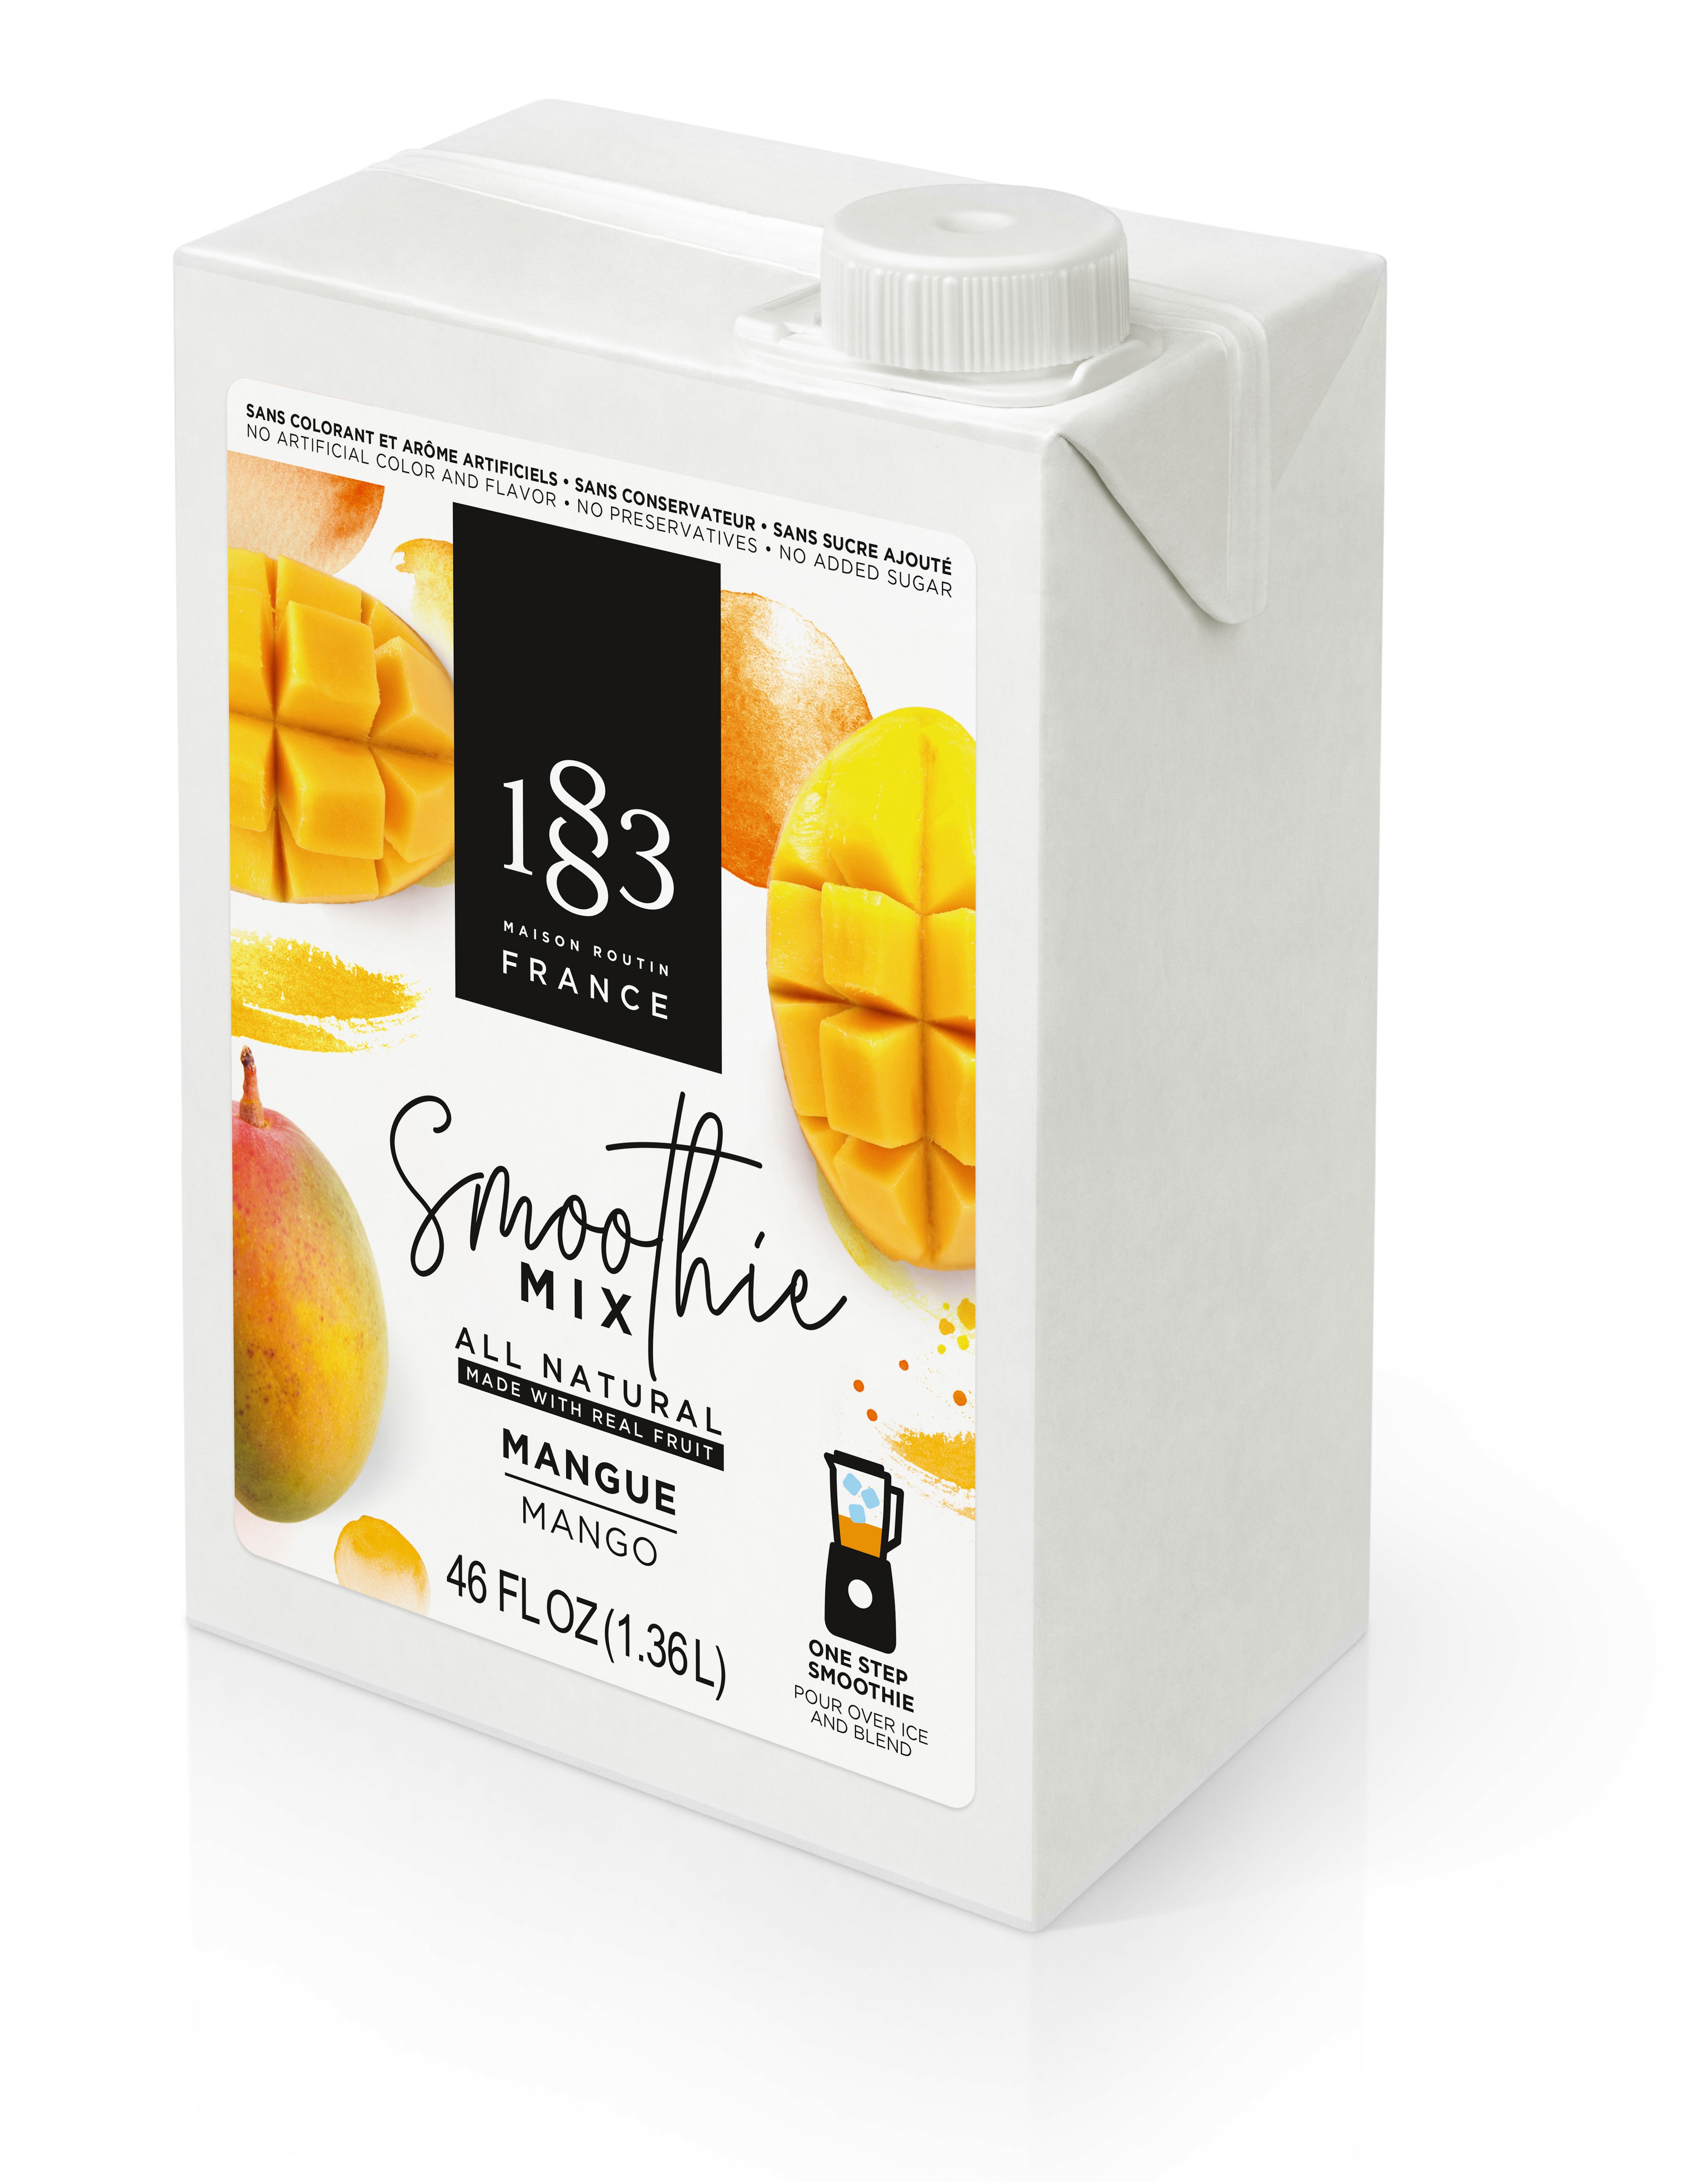 1883 Smoothie Mix - 46oz Carton: Mango